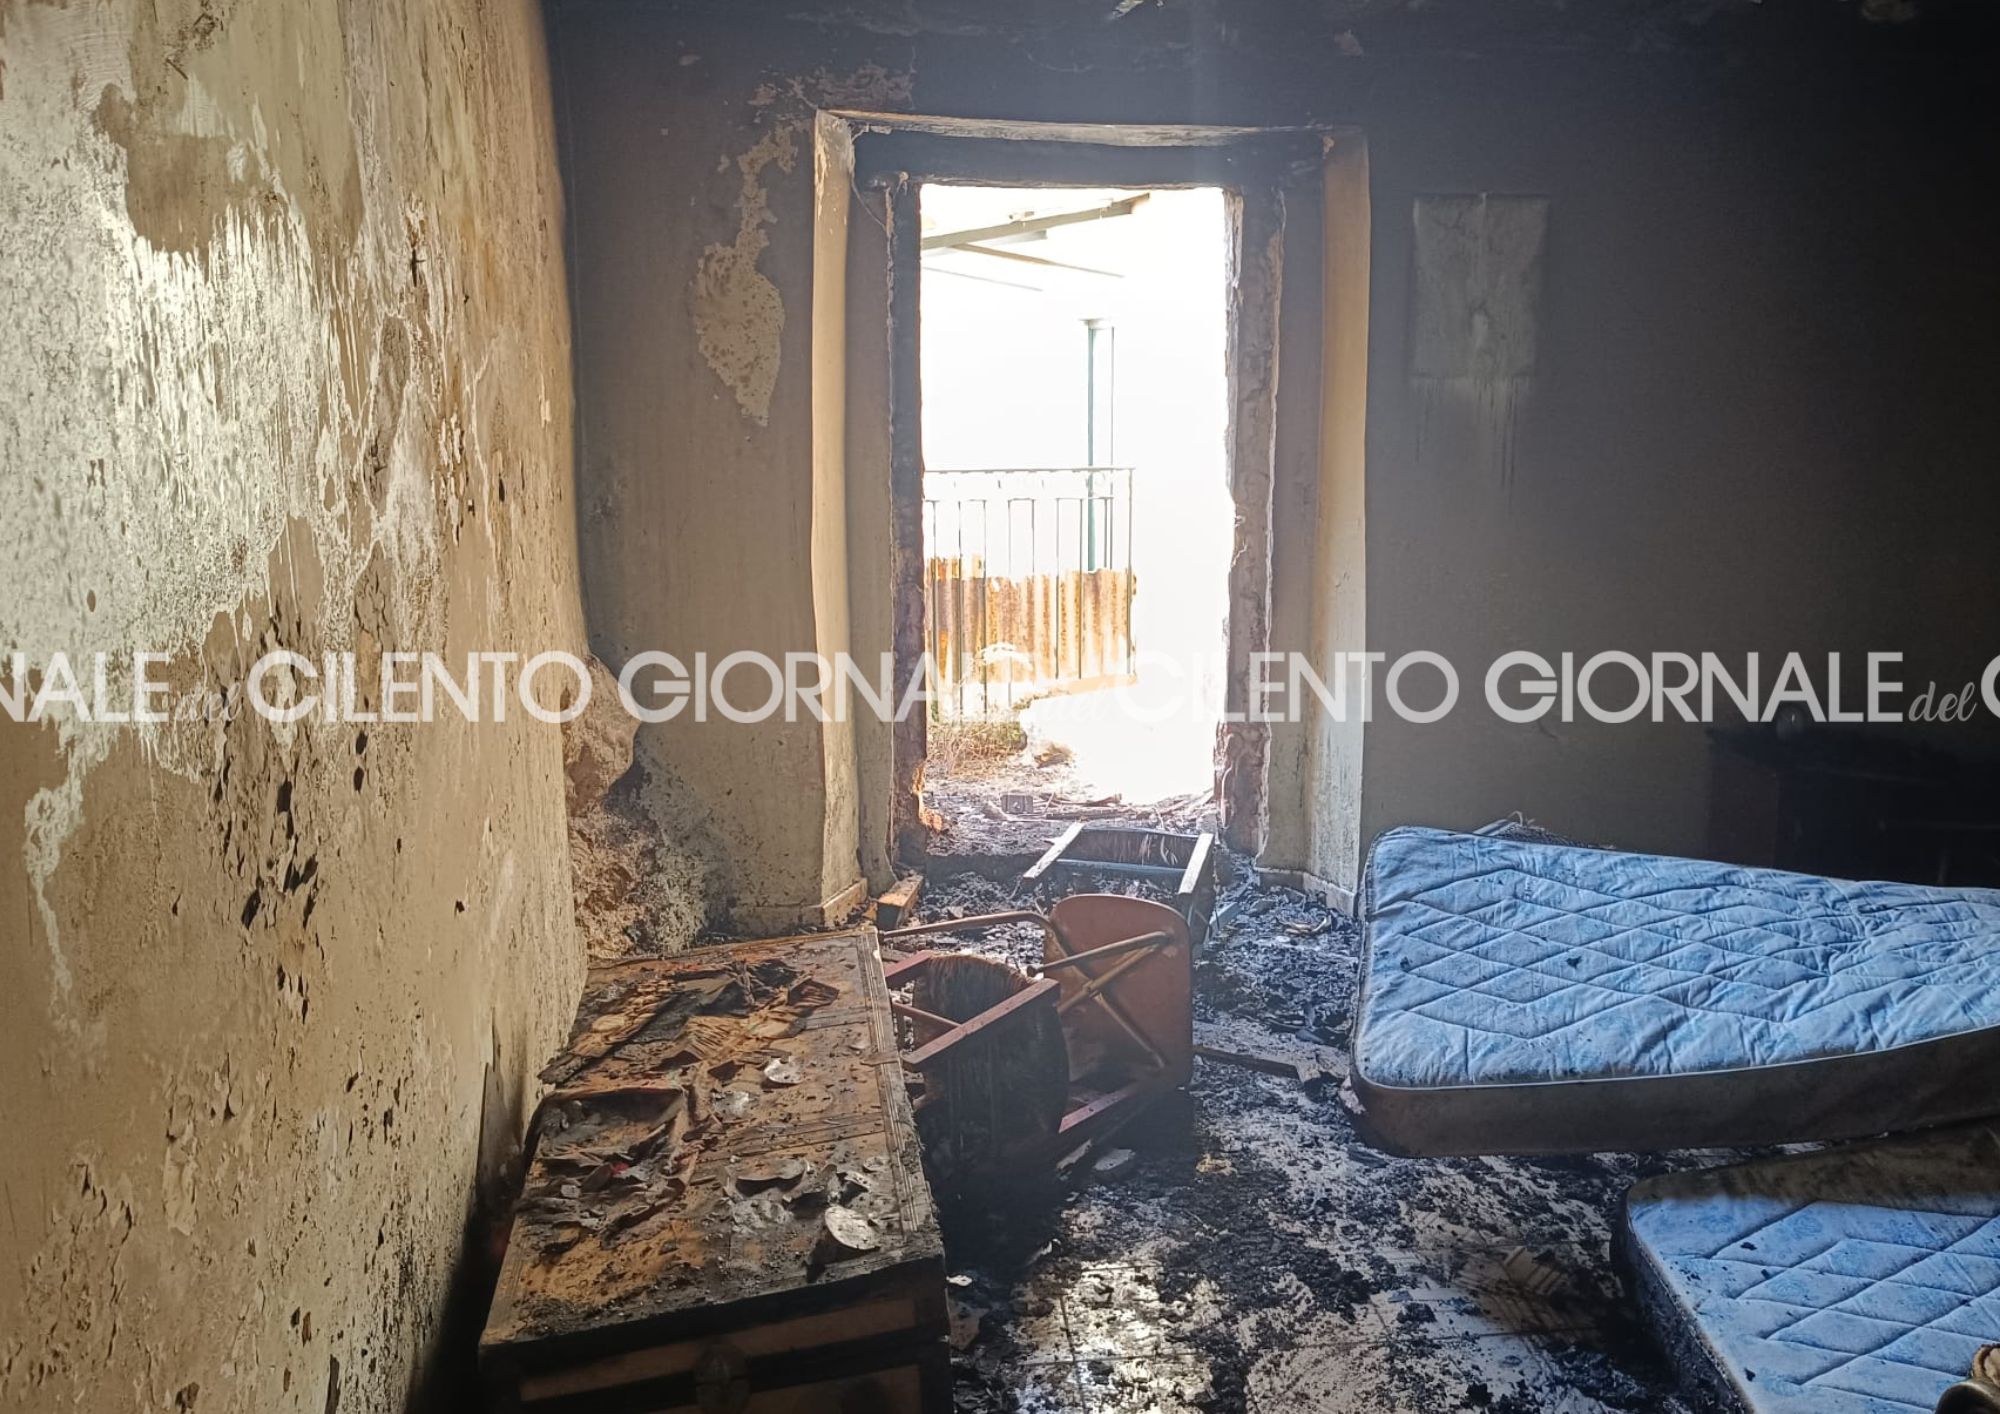 Sassano, incendio in una casa abbandonata del centro storico: indagini in corso